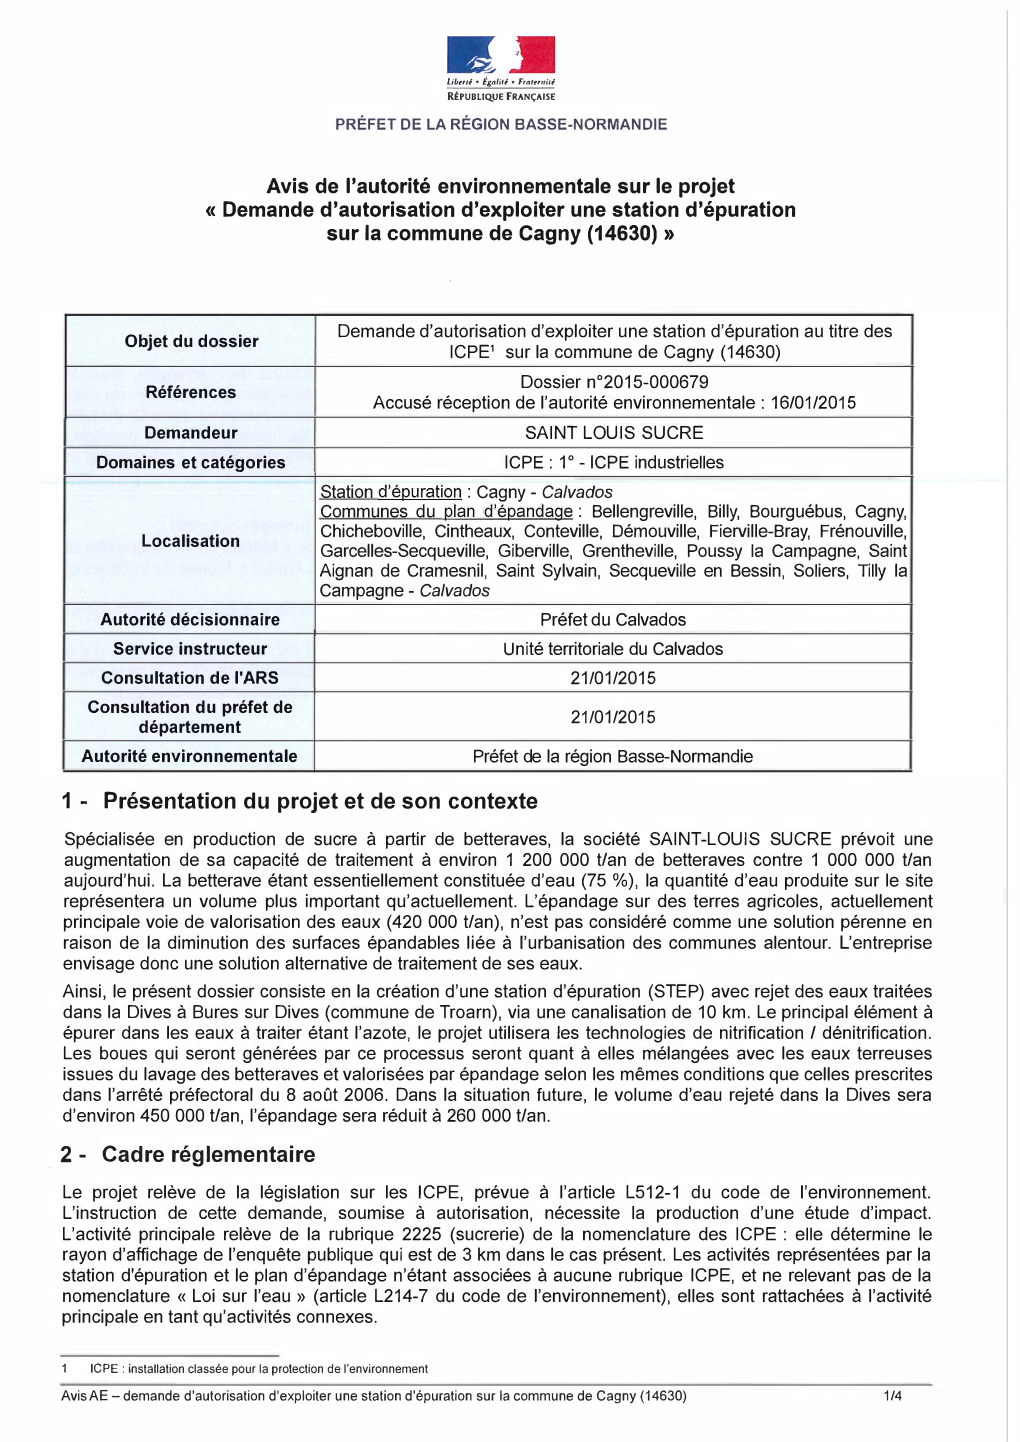 Avis De L'autorité Environnementale Sur Le Projet « Demande D'autorisation D'exploiter Une Station D'épuration Sur La Commune De Cagny (14630) »